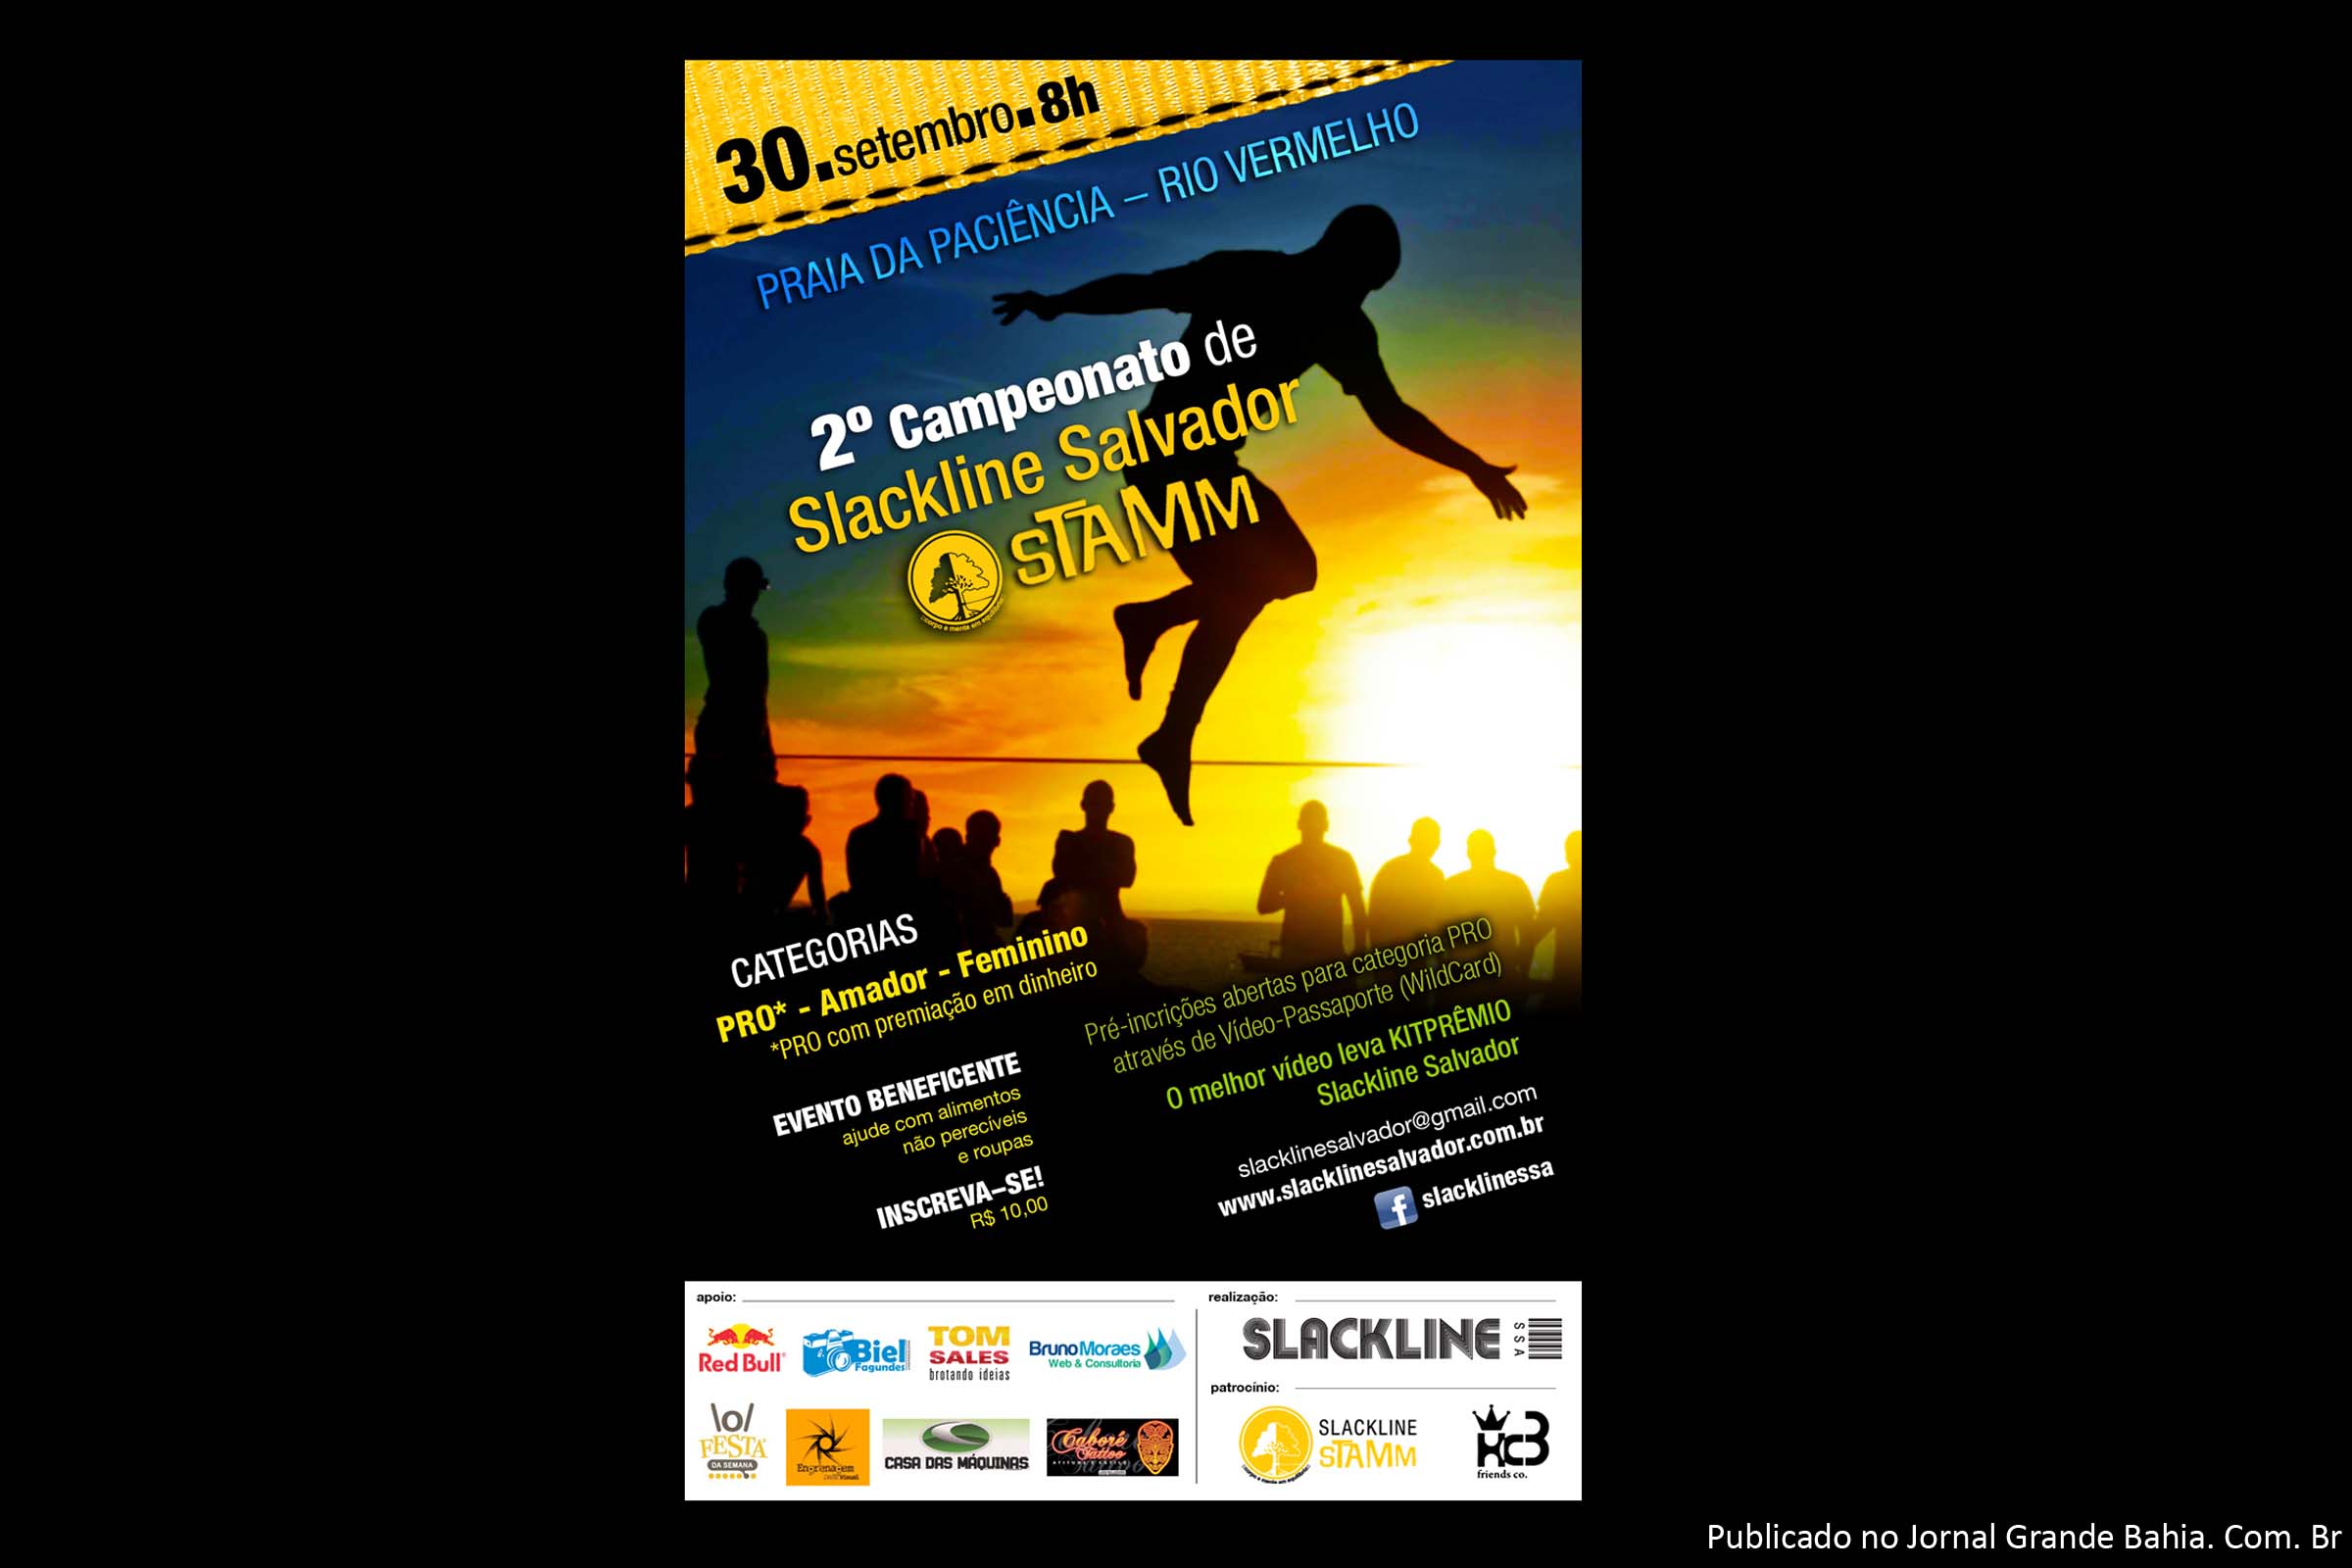 2º Campeonato de Slackline Salvador STAMM, ocorre na praia da Paciência em Salvador.